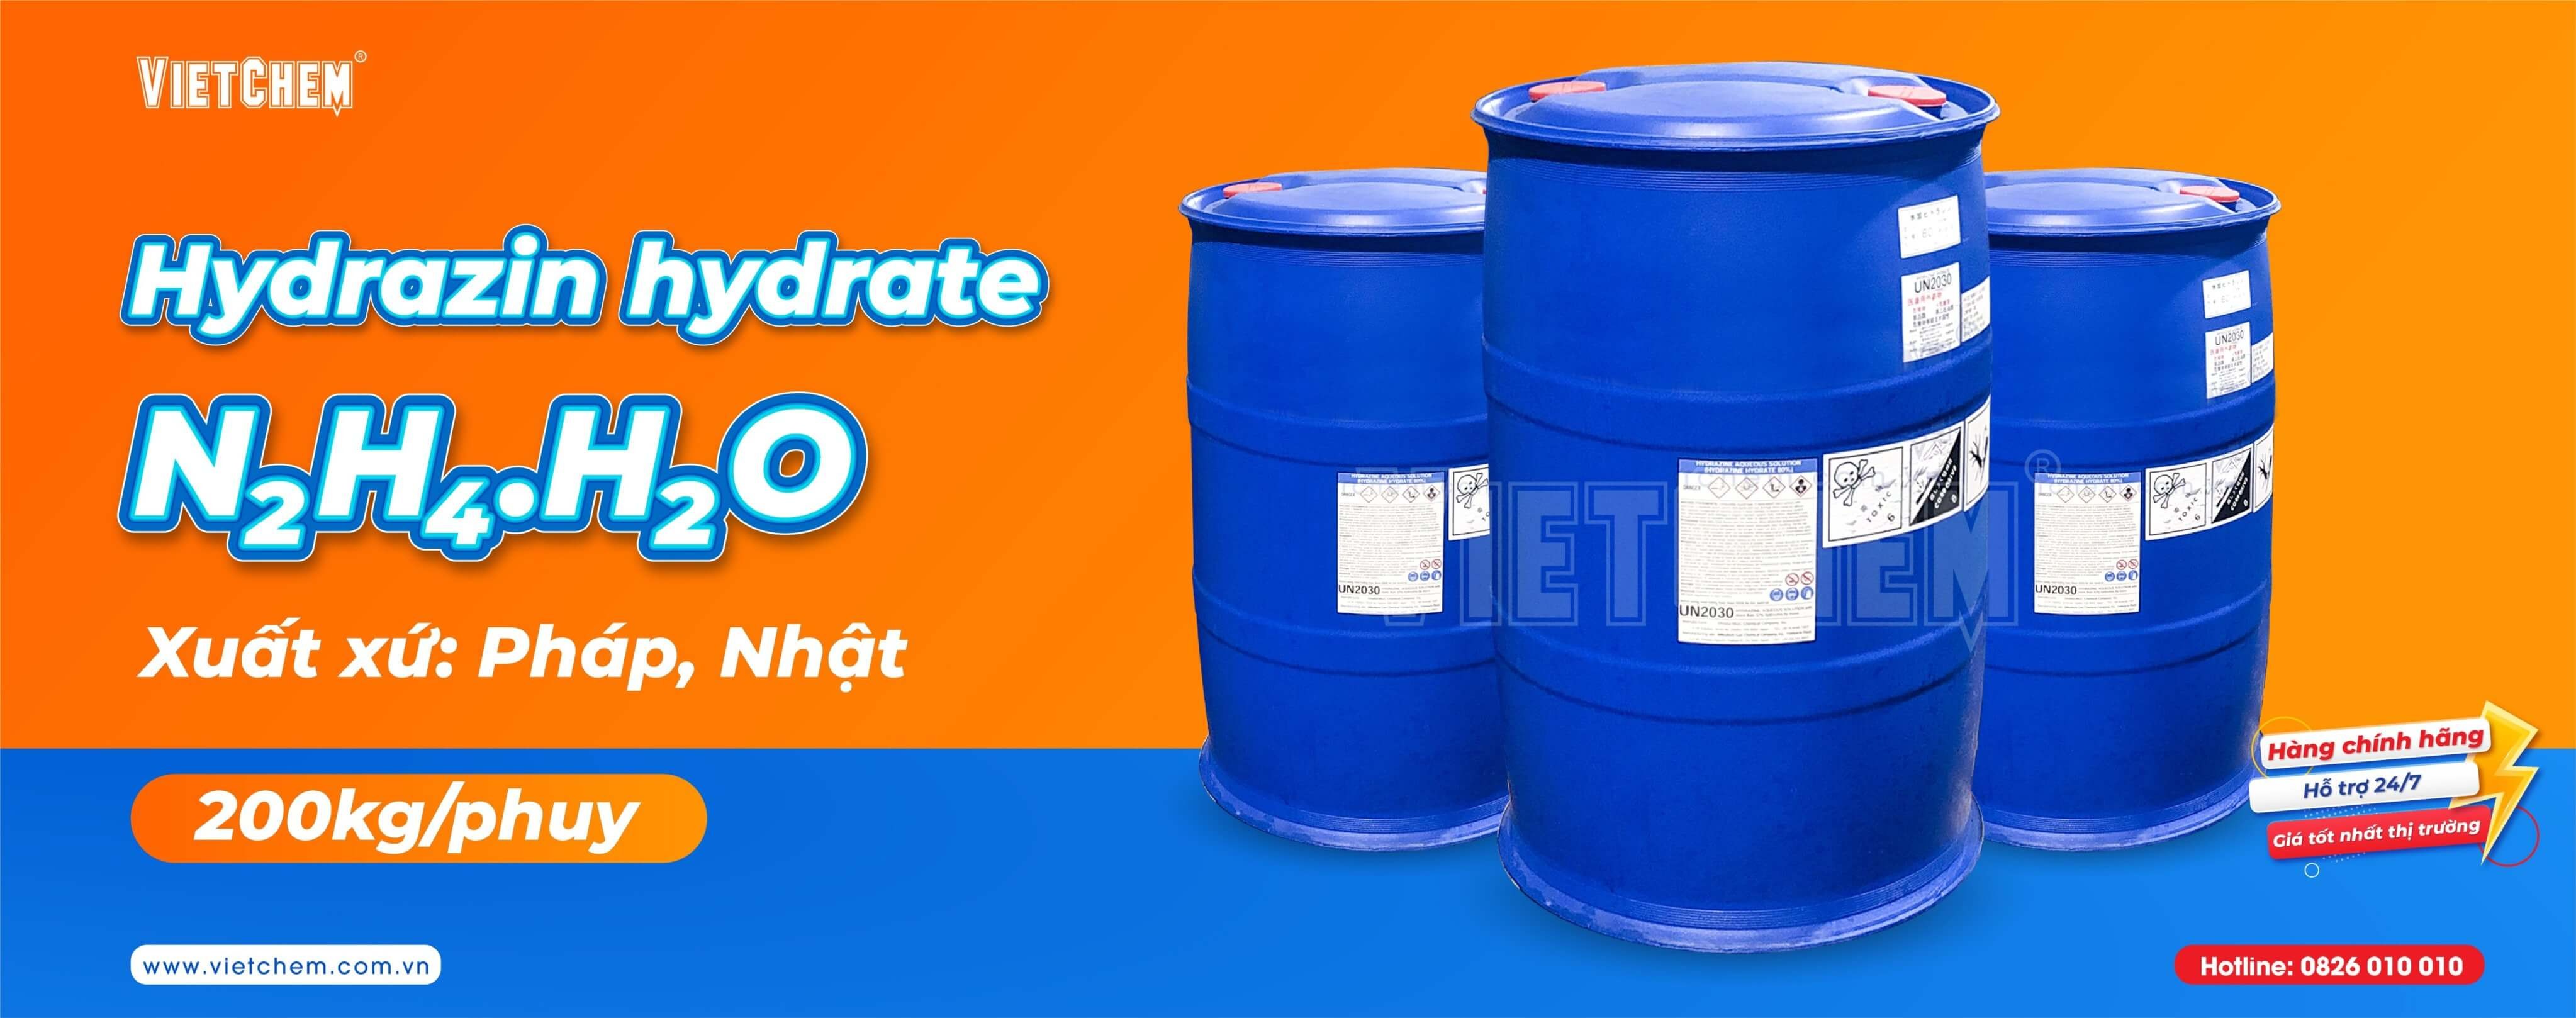 Hydrazine hydrate N2H4.H2O 80%, Pháp, 200kg/phuy